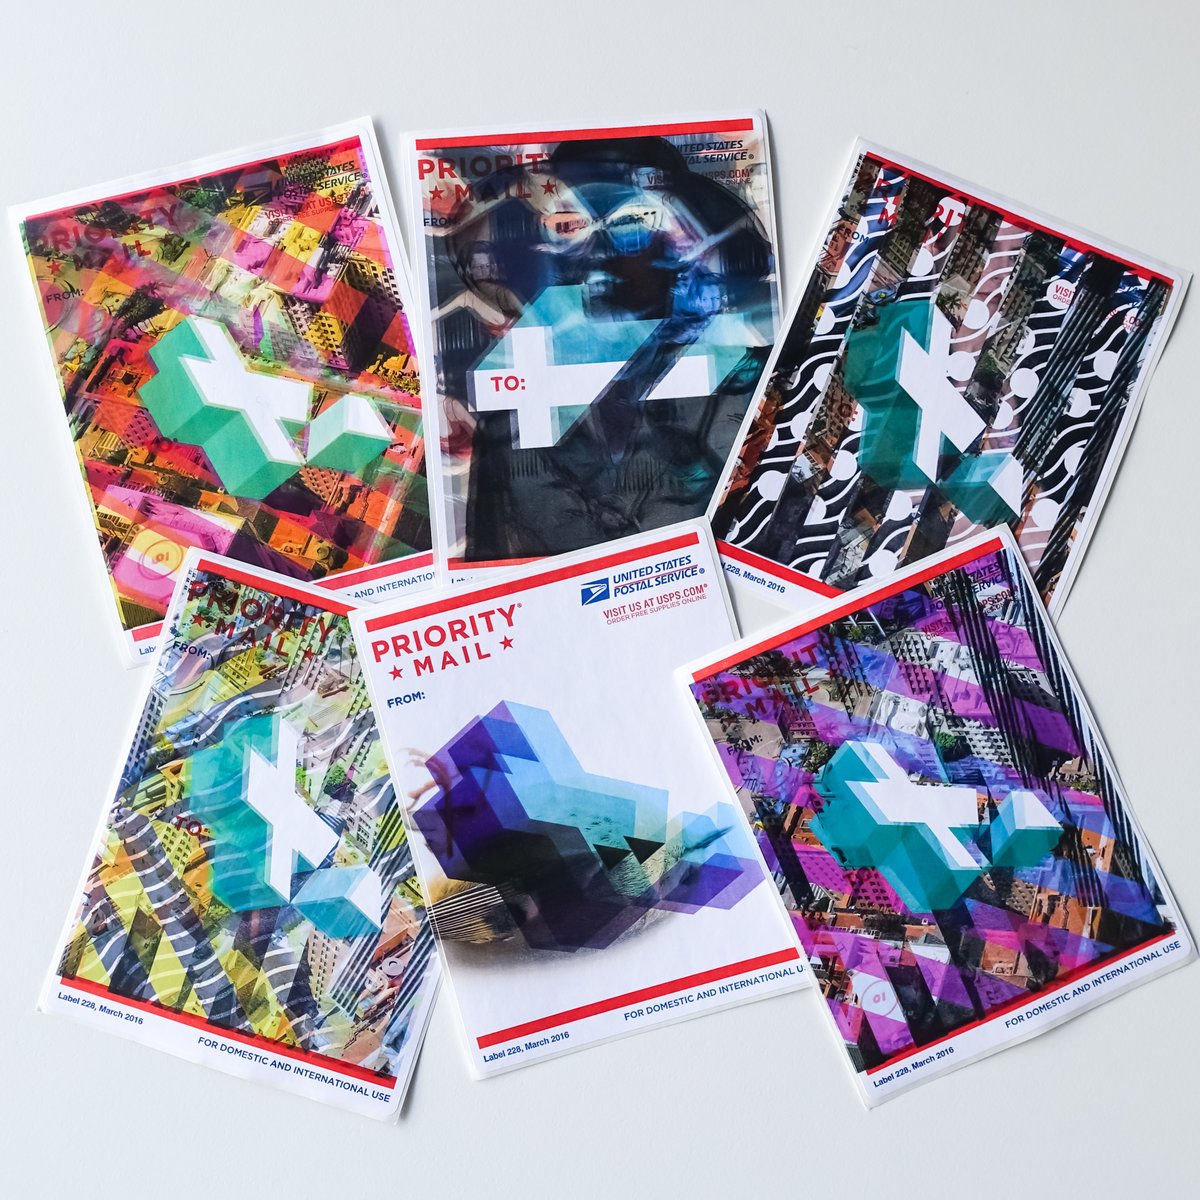 Image of art prints on USPS 228 postal labels